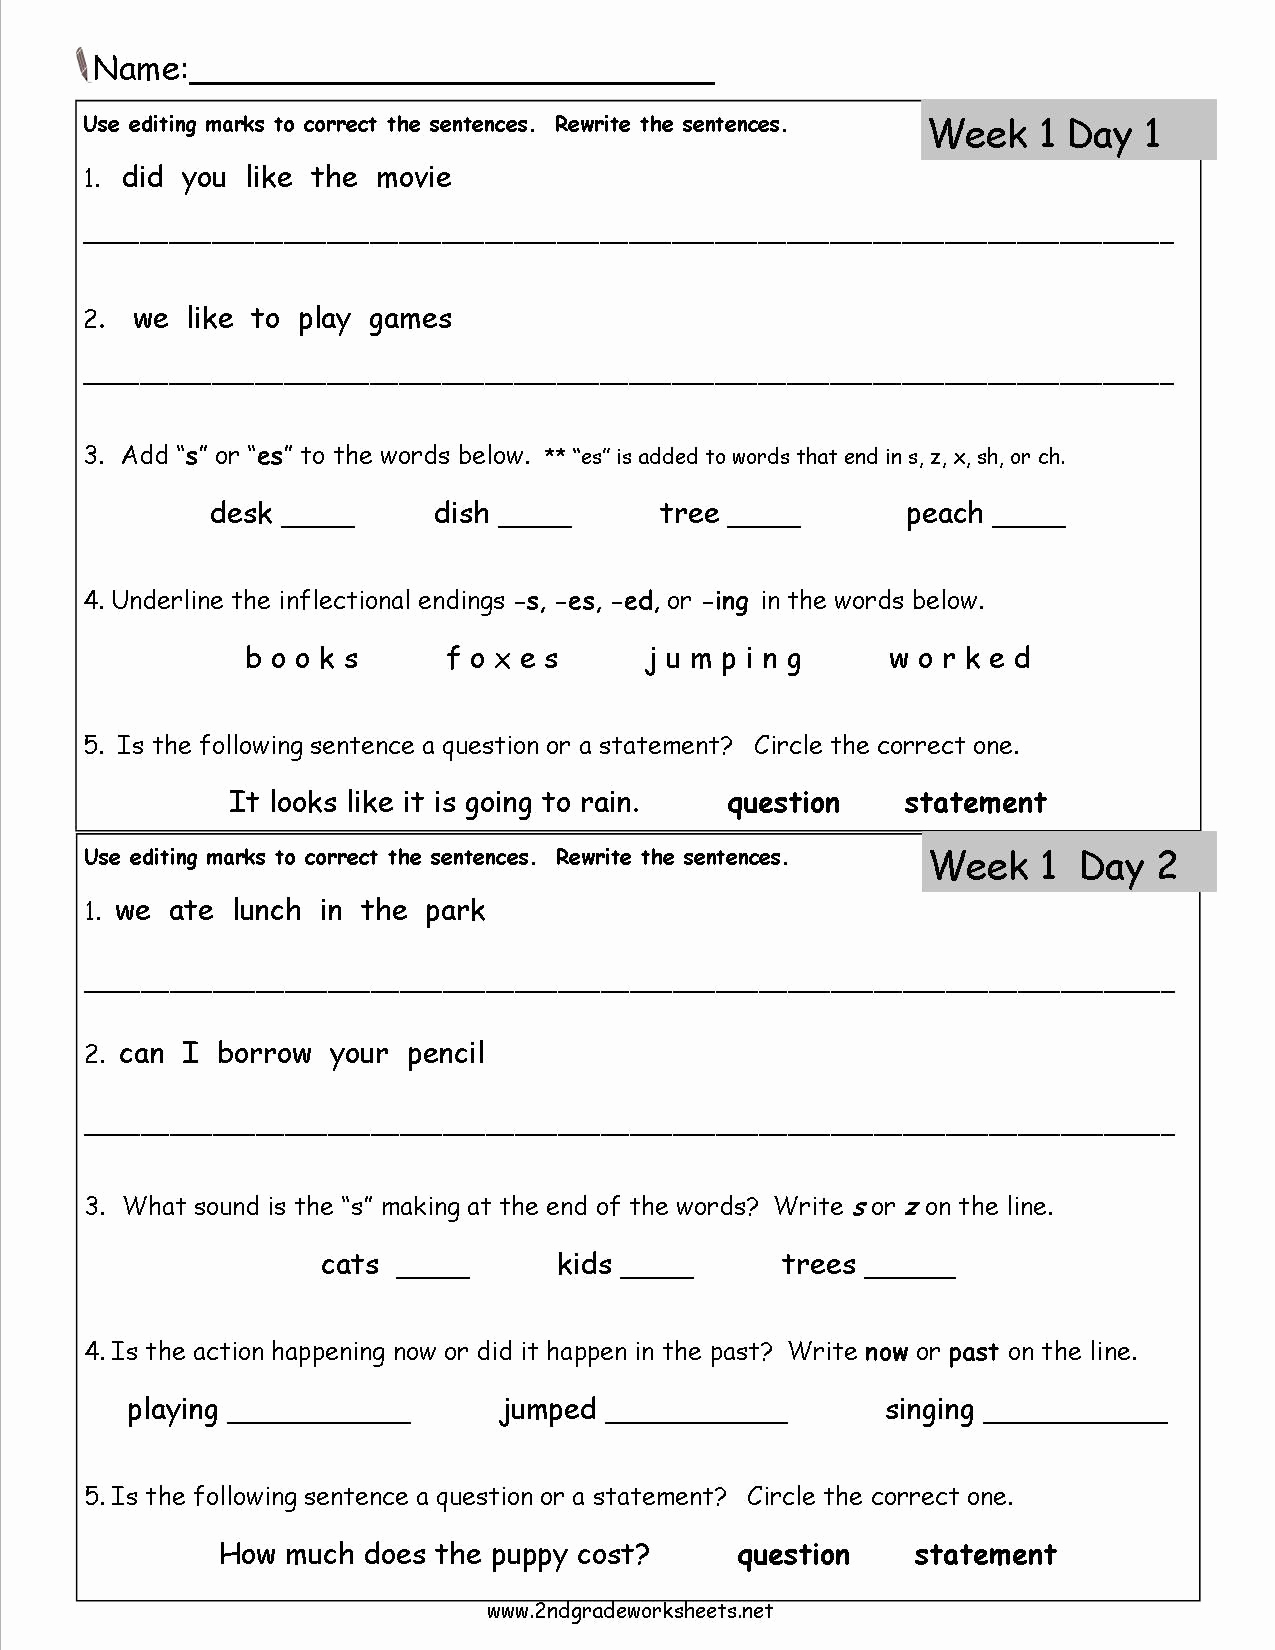 Context Clues Worksheets Second Grade New 20 Context Clues Worksheets 2nd Grade